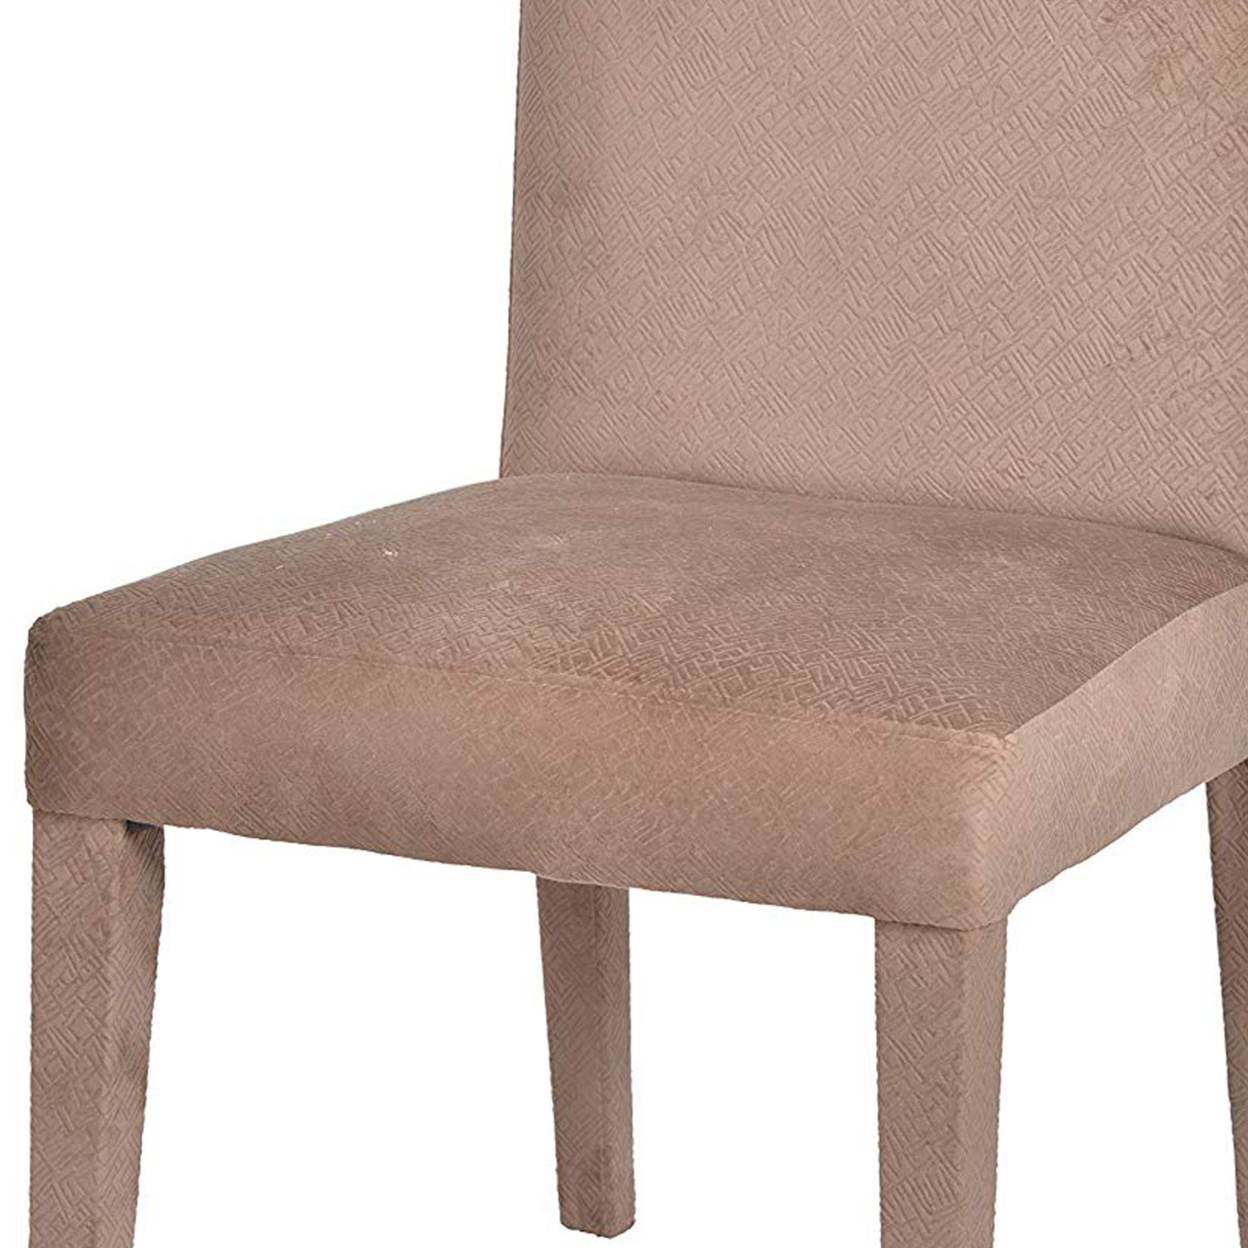 Striking Embellishing Belmont Chair- Saltoro Sherpi